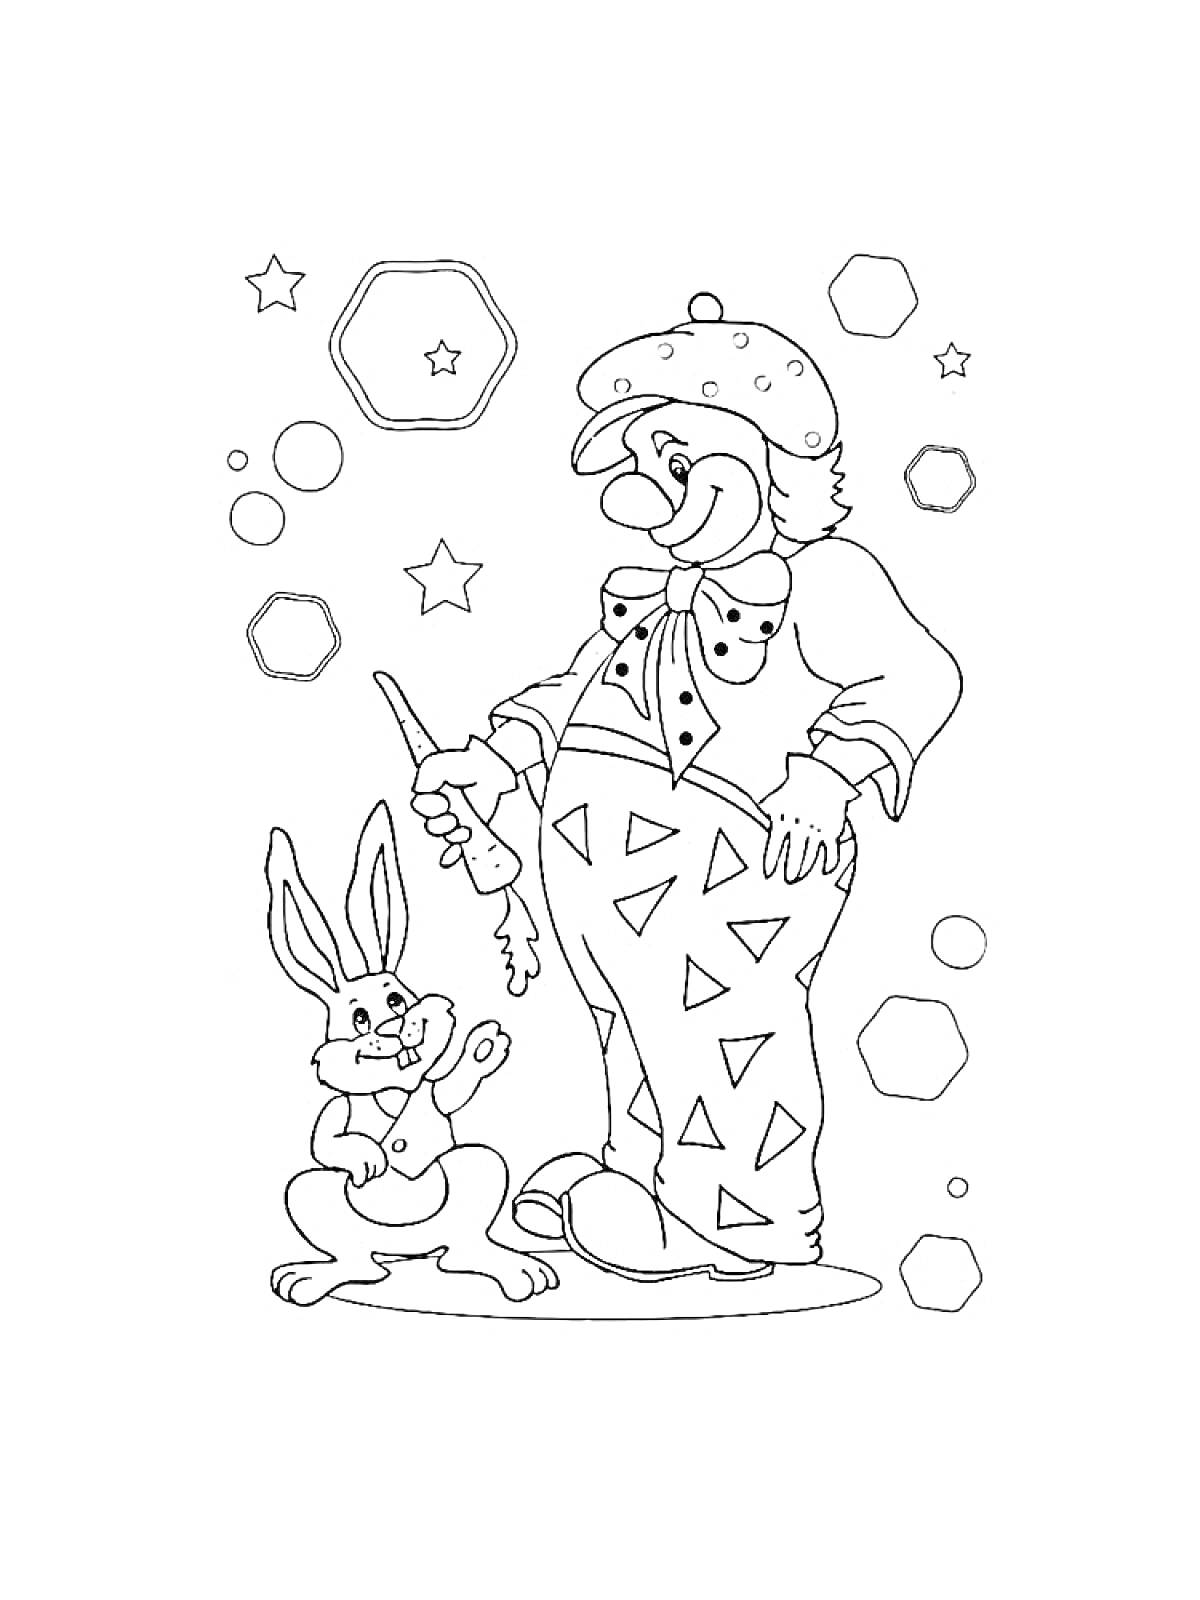 Раскраска Клоун, держащий морковь с кроликом, окружённый звёздами и шестиугольниками